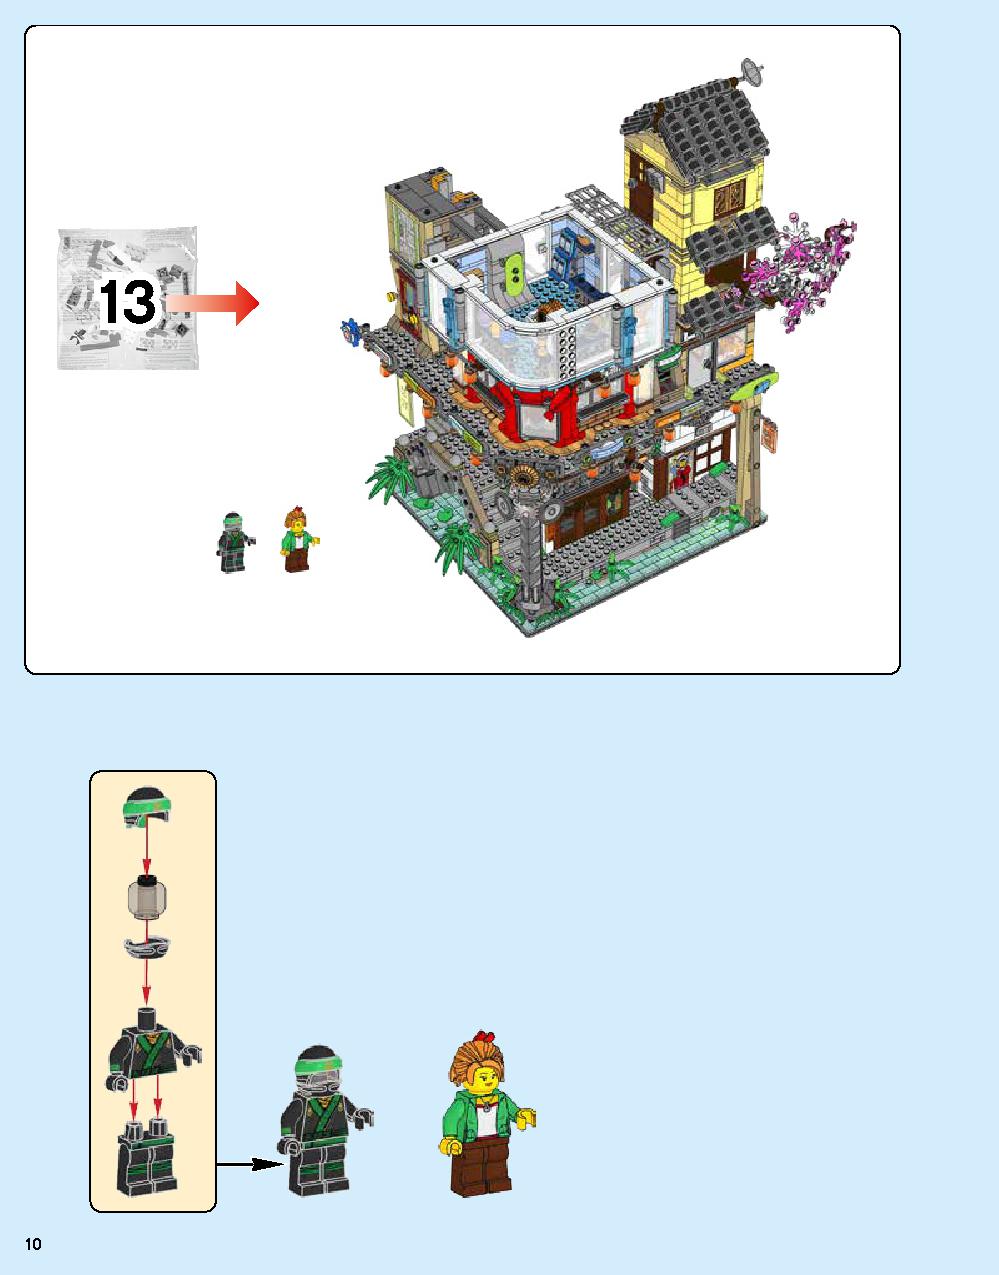 ニンジャゴー シティ 70620 レゴの商品情報 レゴの説明書・組立方法 10 page